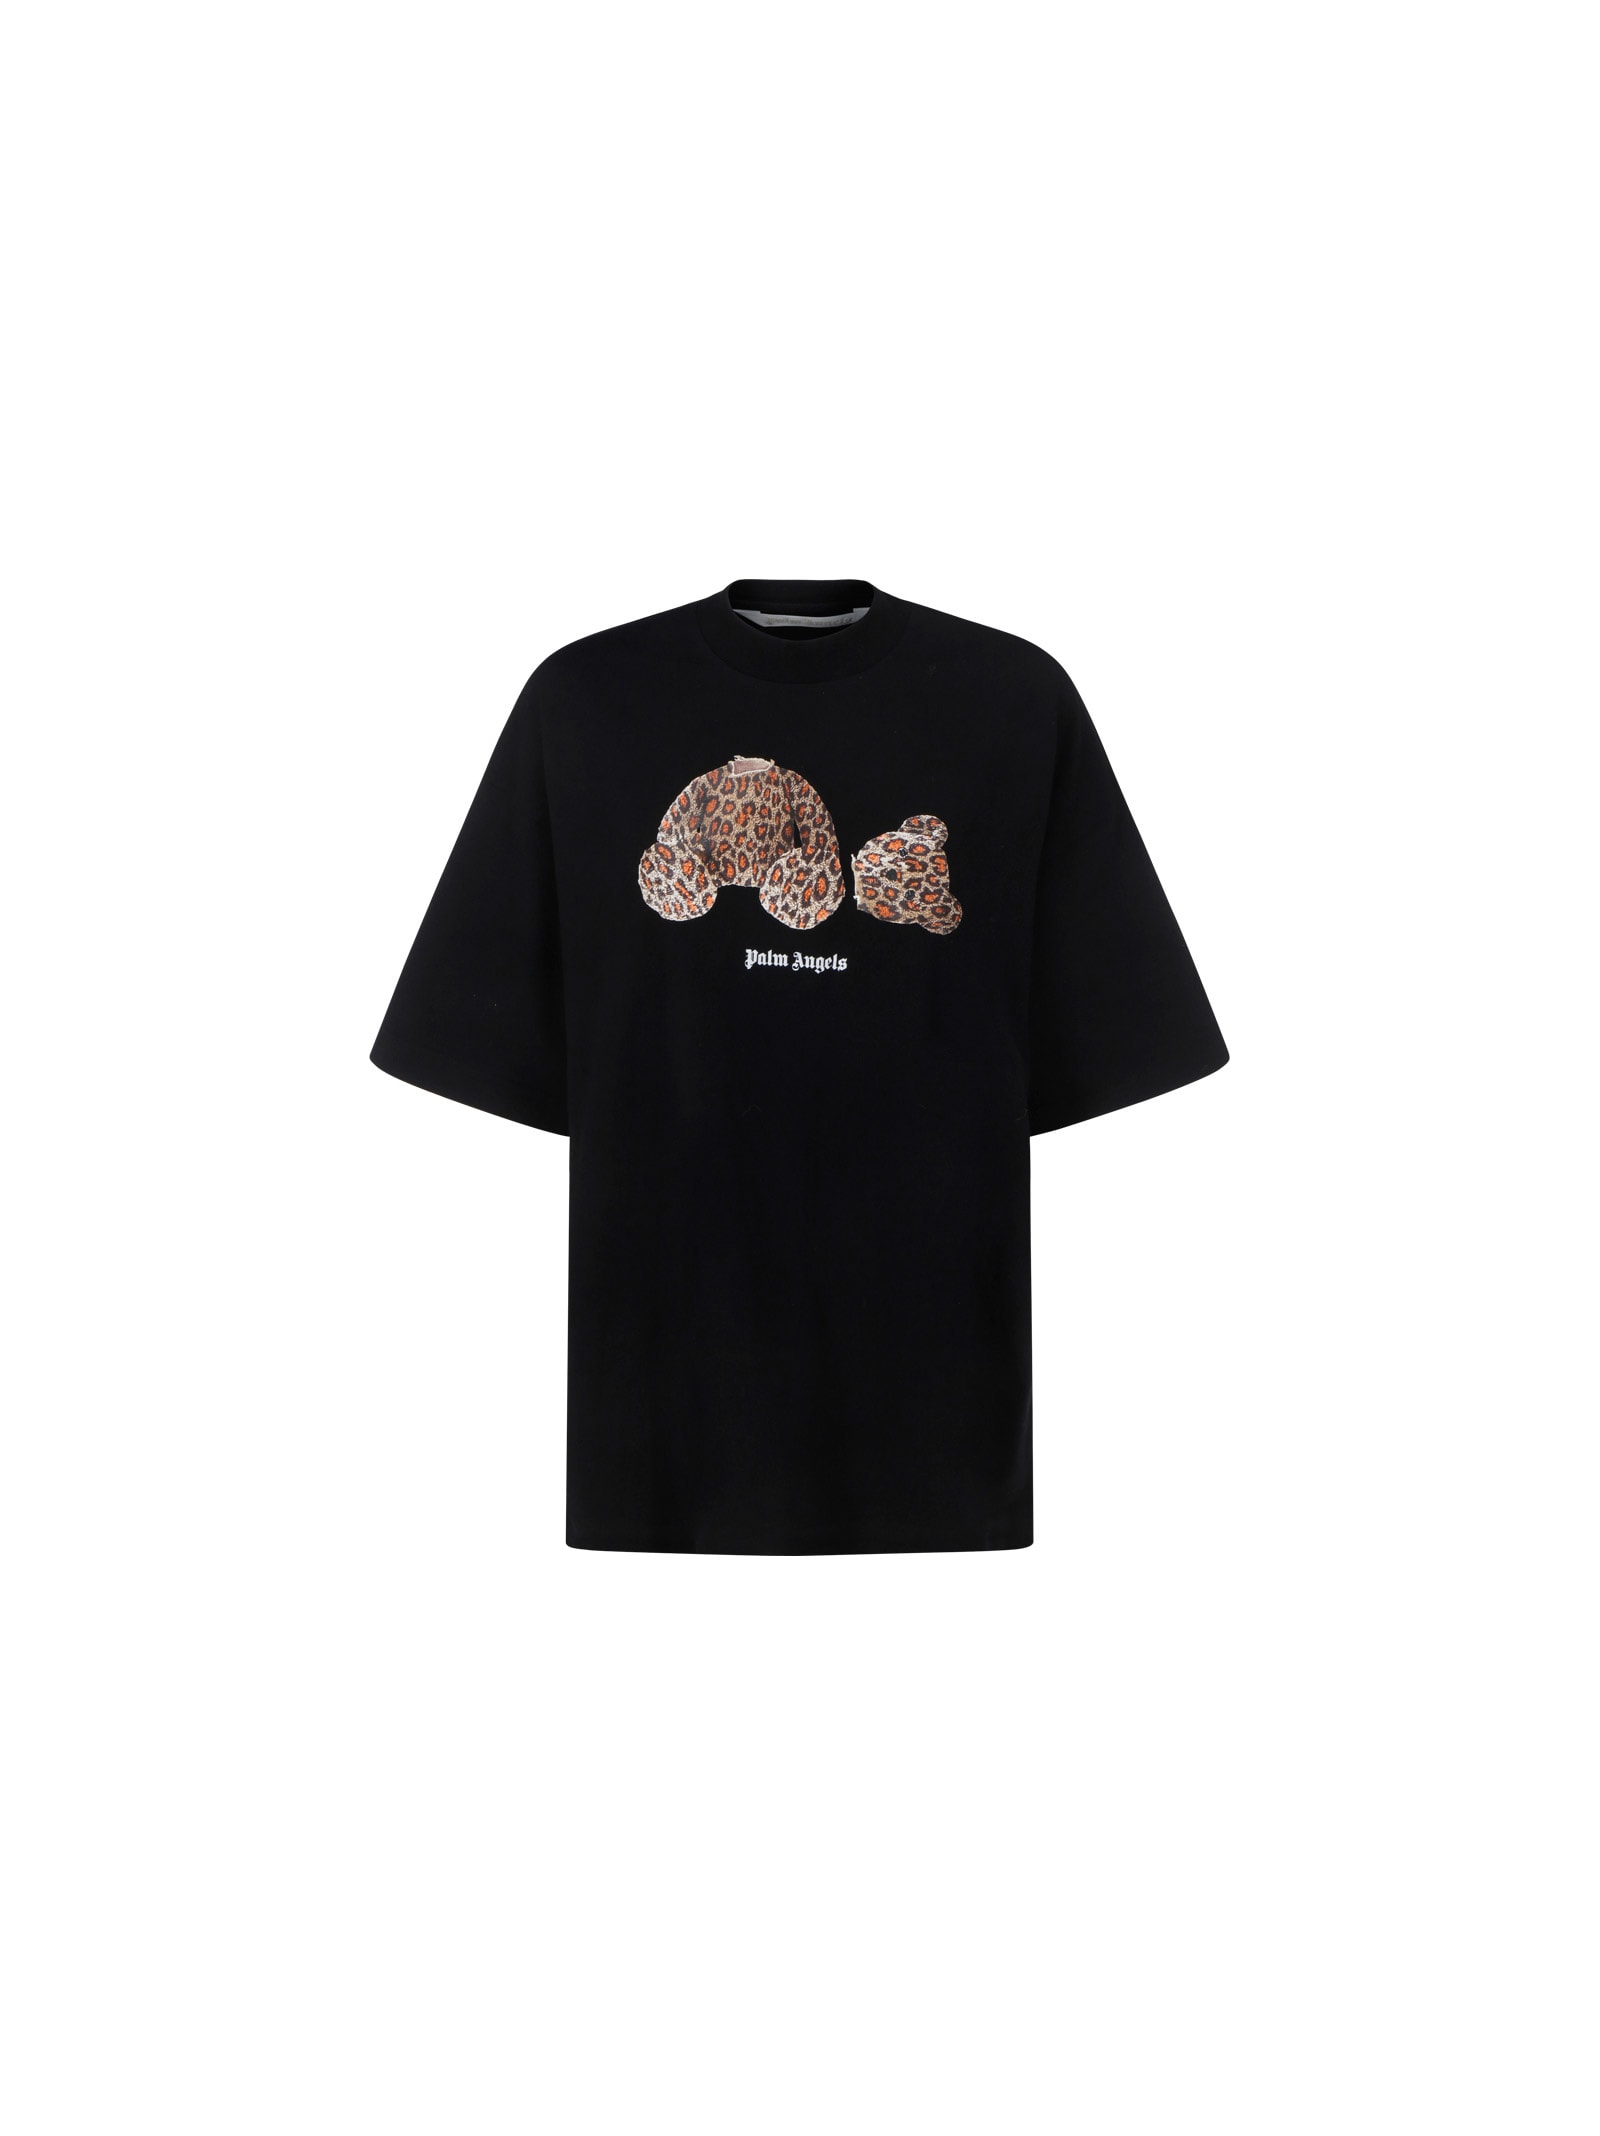 Palm Angels Leopard Bear T-shirt